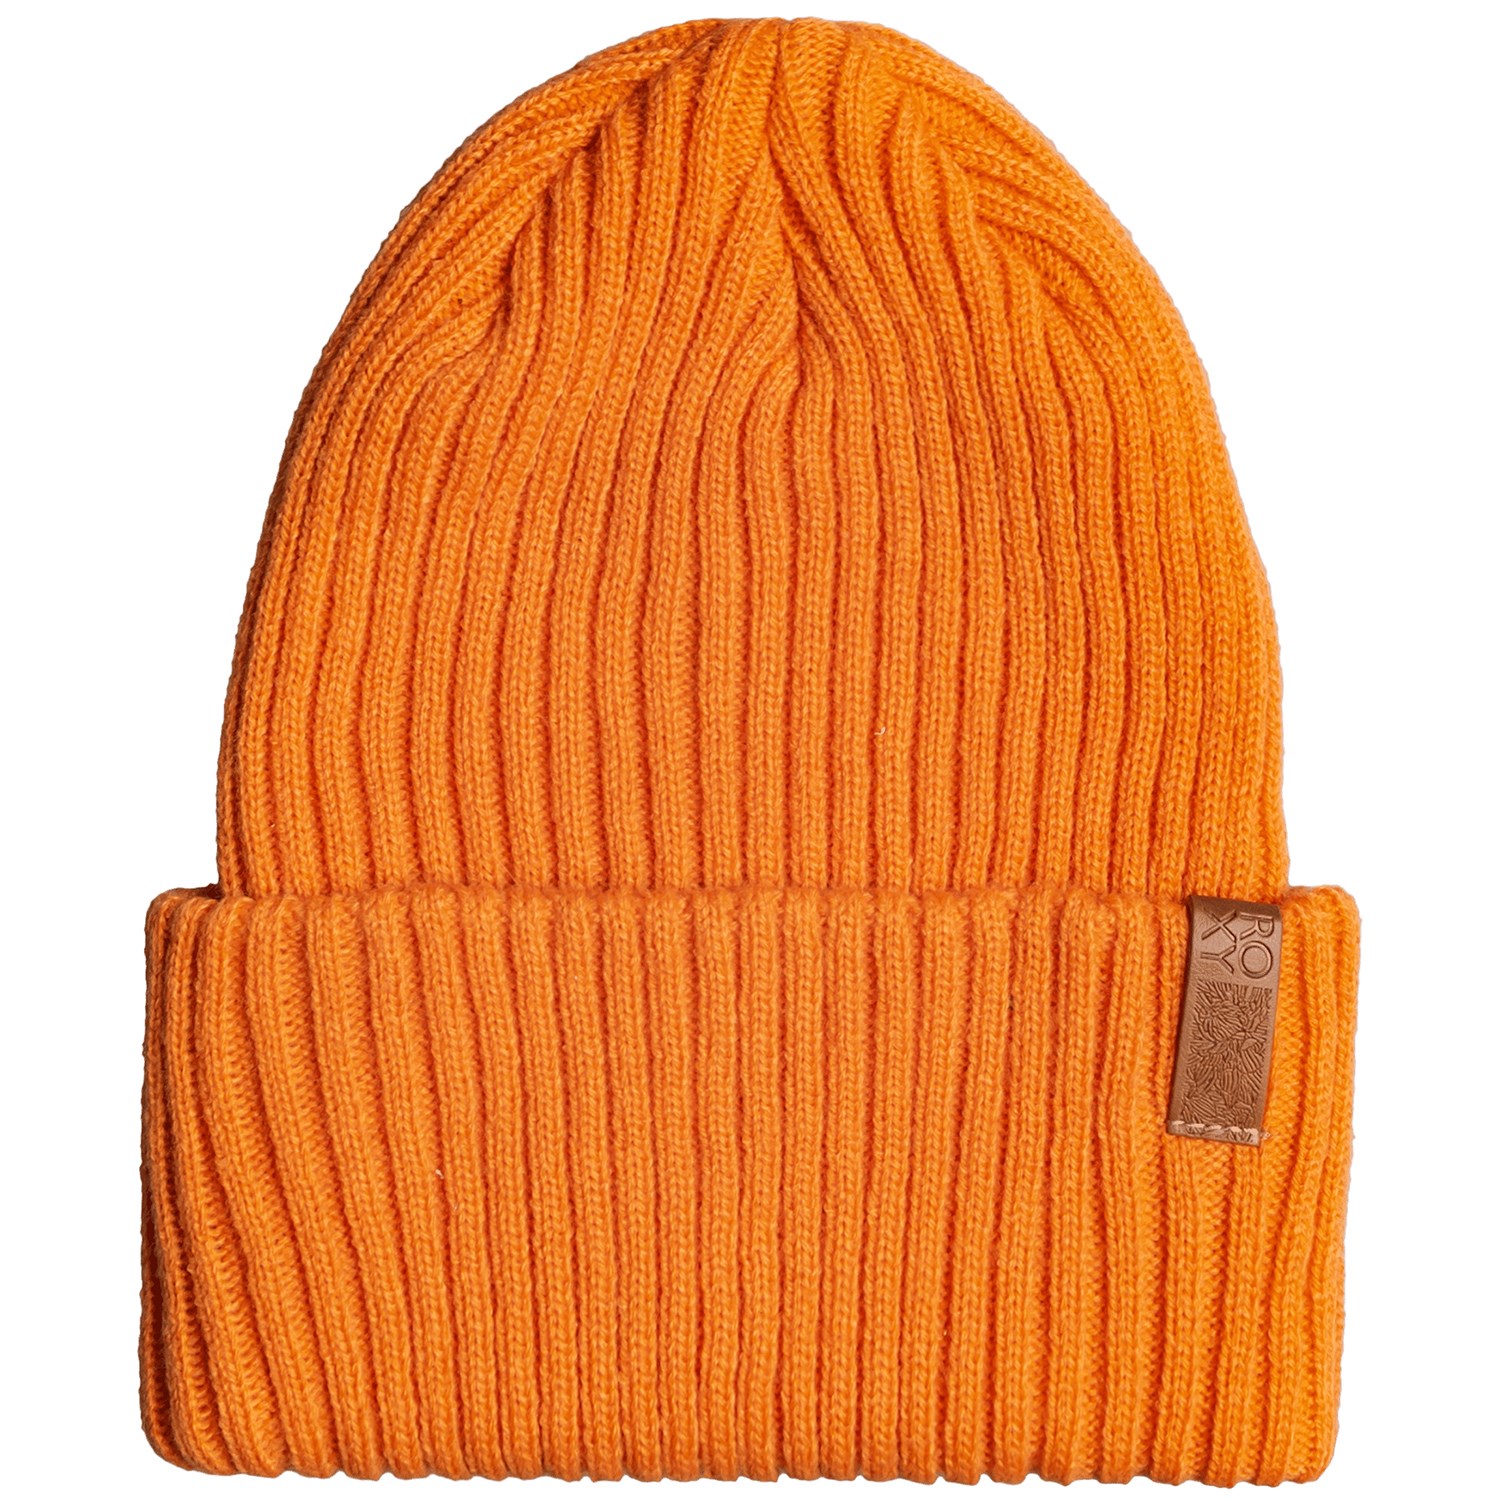 Шапка - Бини Roxy Dynabeat женская, оранжевый шапка бини размер универсальный оранжевый белый